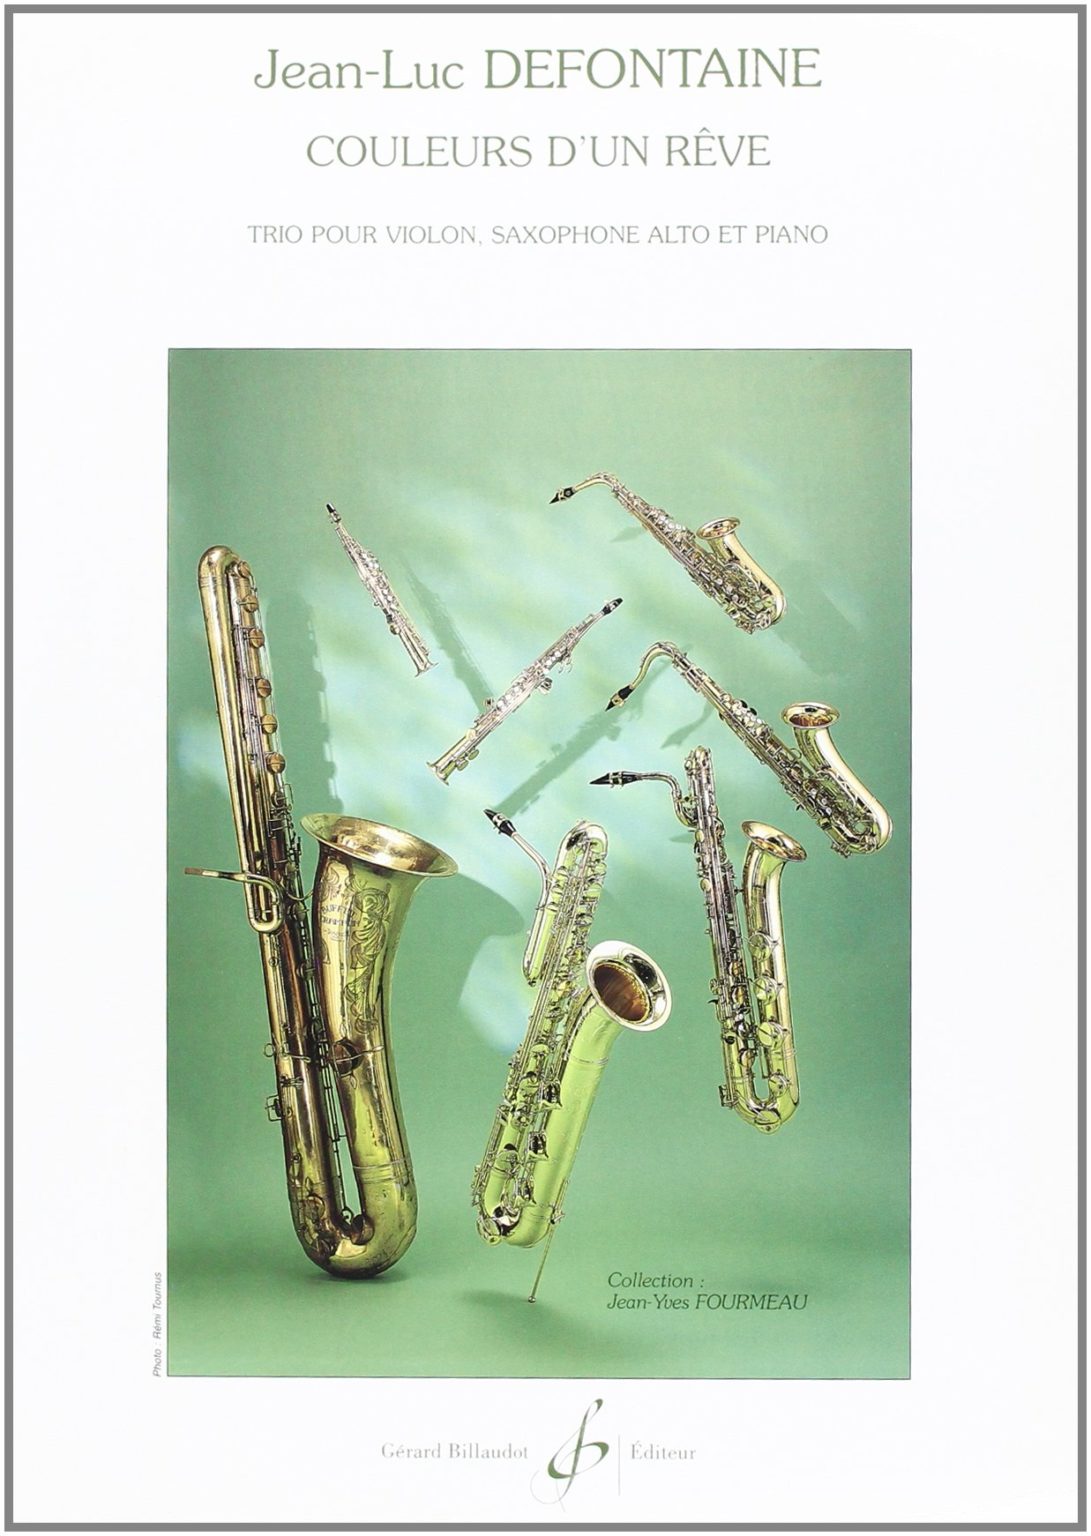 Couleurs d'un Reve (2000) para violín, saxofón alto y piano. Jean-Luc Defontaine